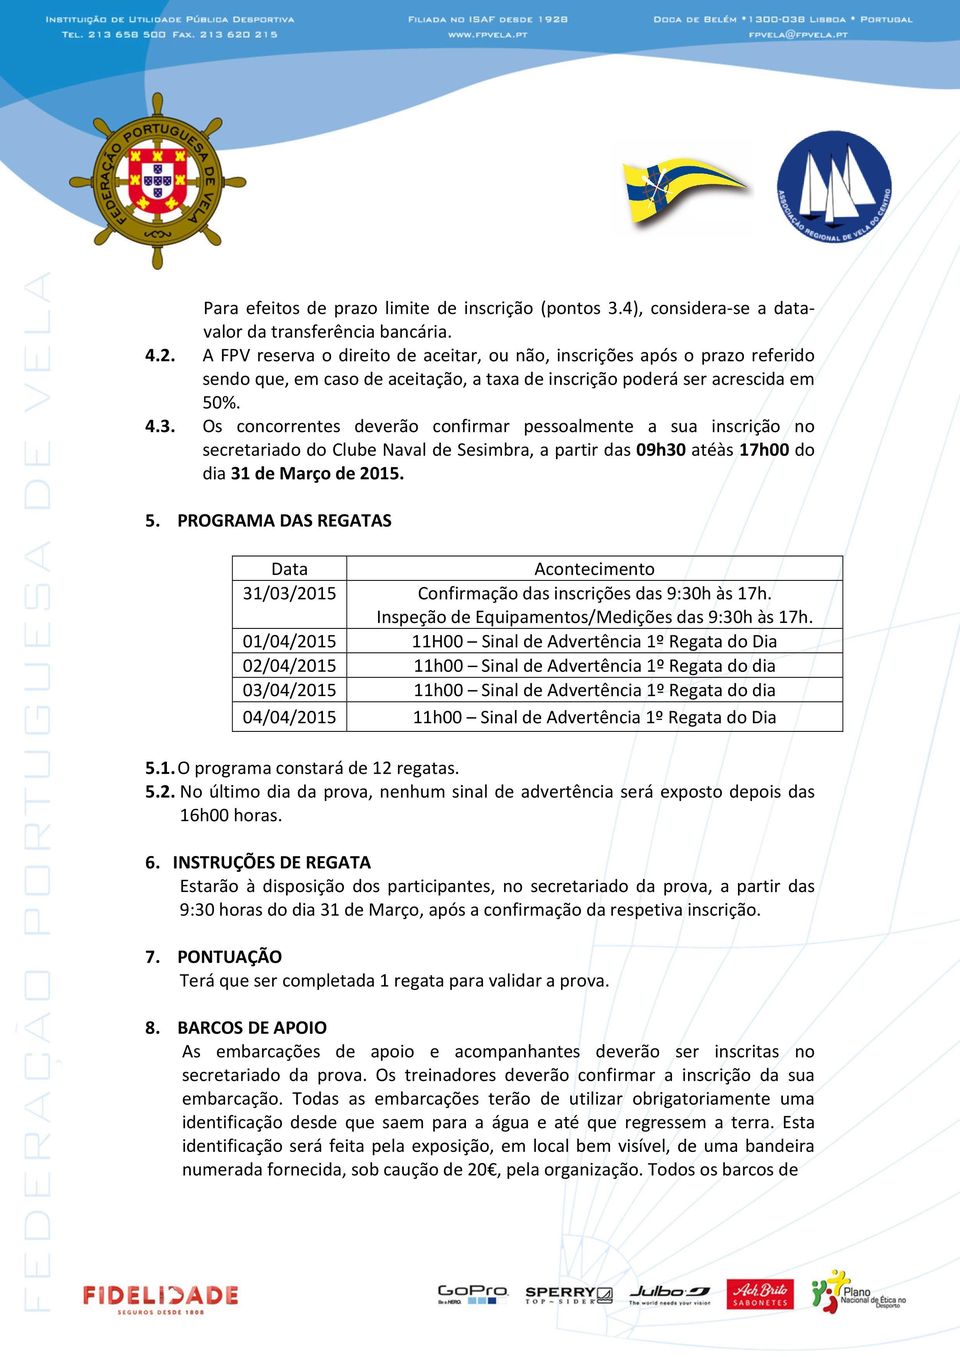 Os concorrentes deverão confirmar pessoalmente a sua inscrição no secretariado do Clube Naval de Sesimbra, a partir das 09h30 atéàs 17h00 do dia 31 de Março de 2015. 5.